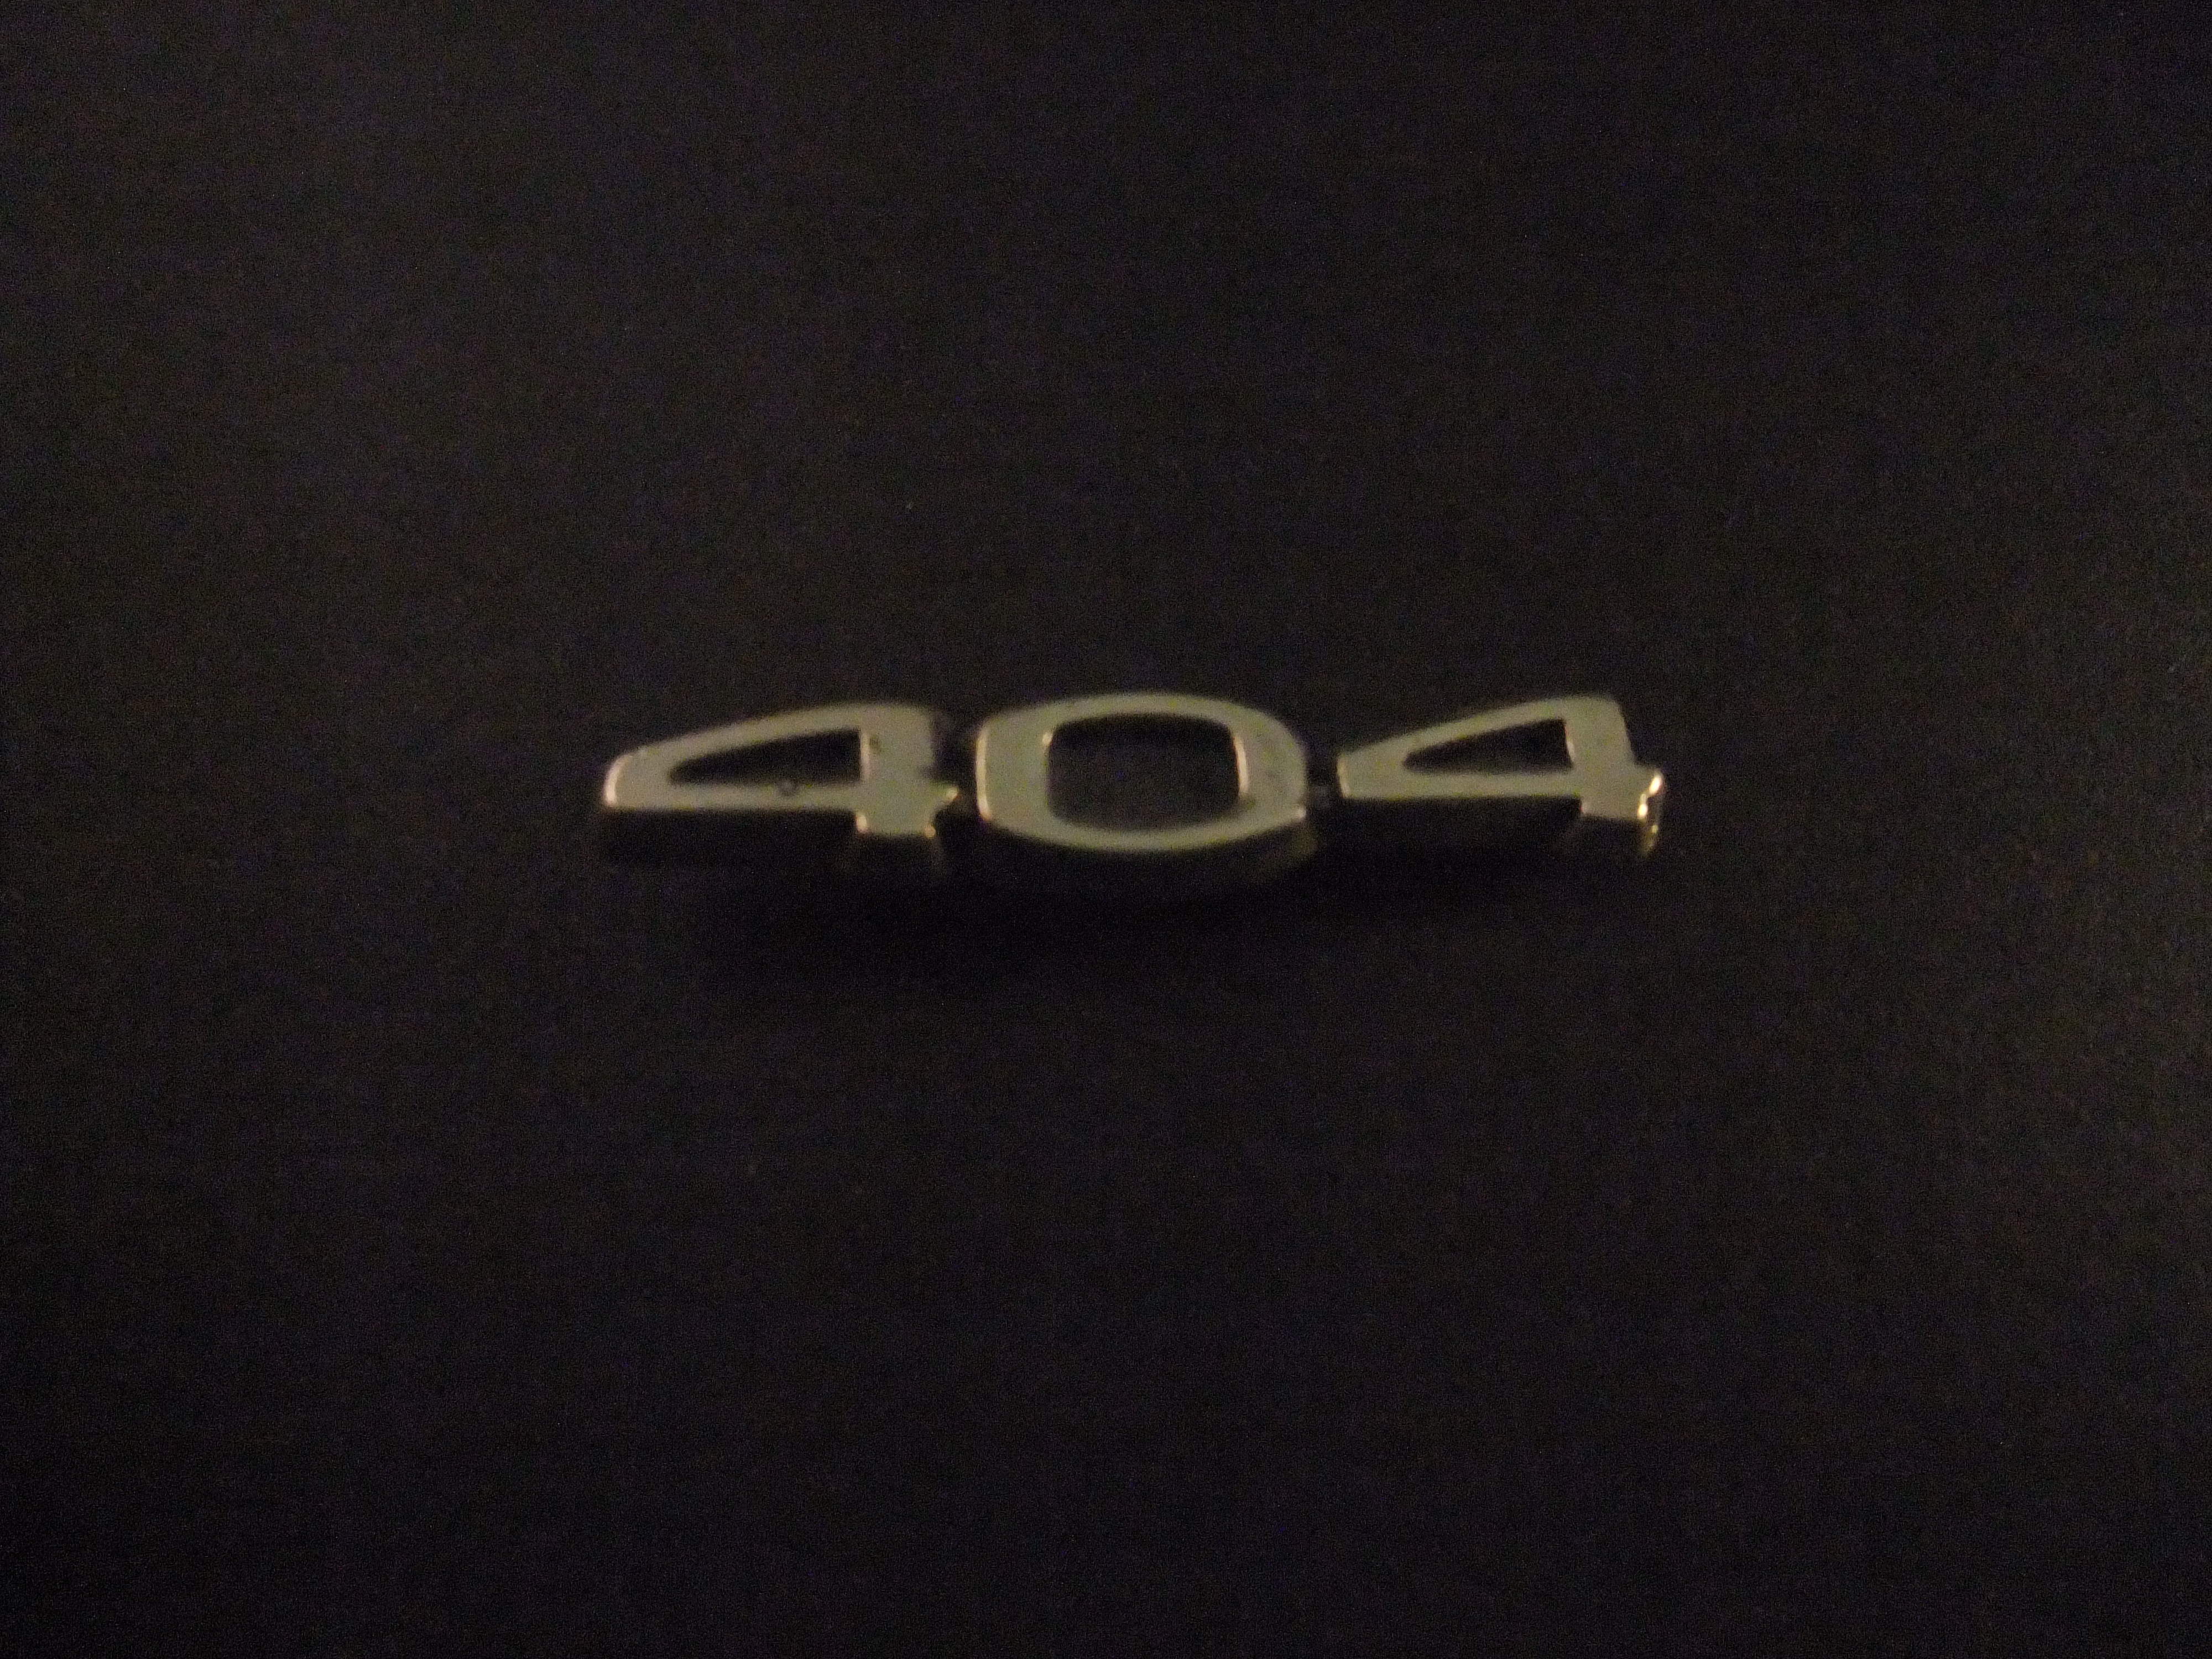 Peugeot 404 zilverkleurig logo